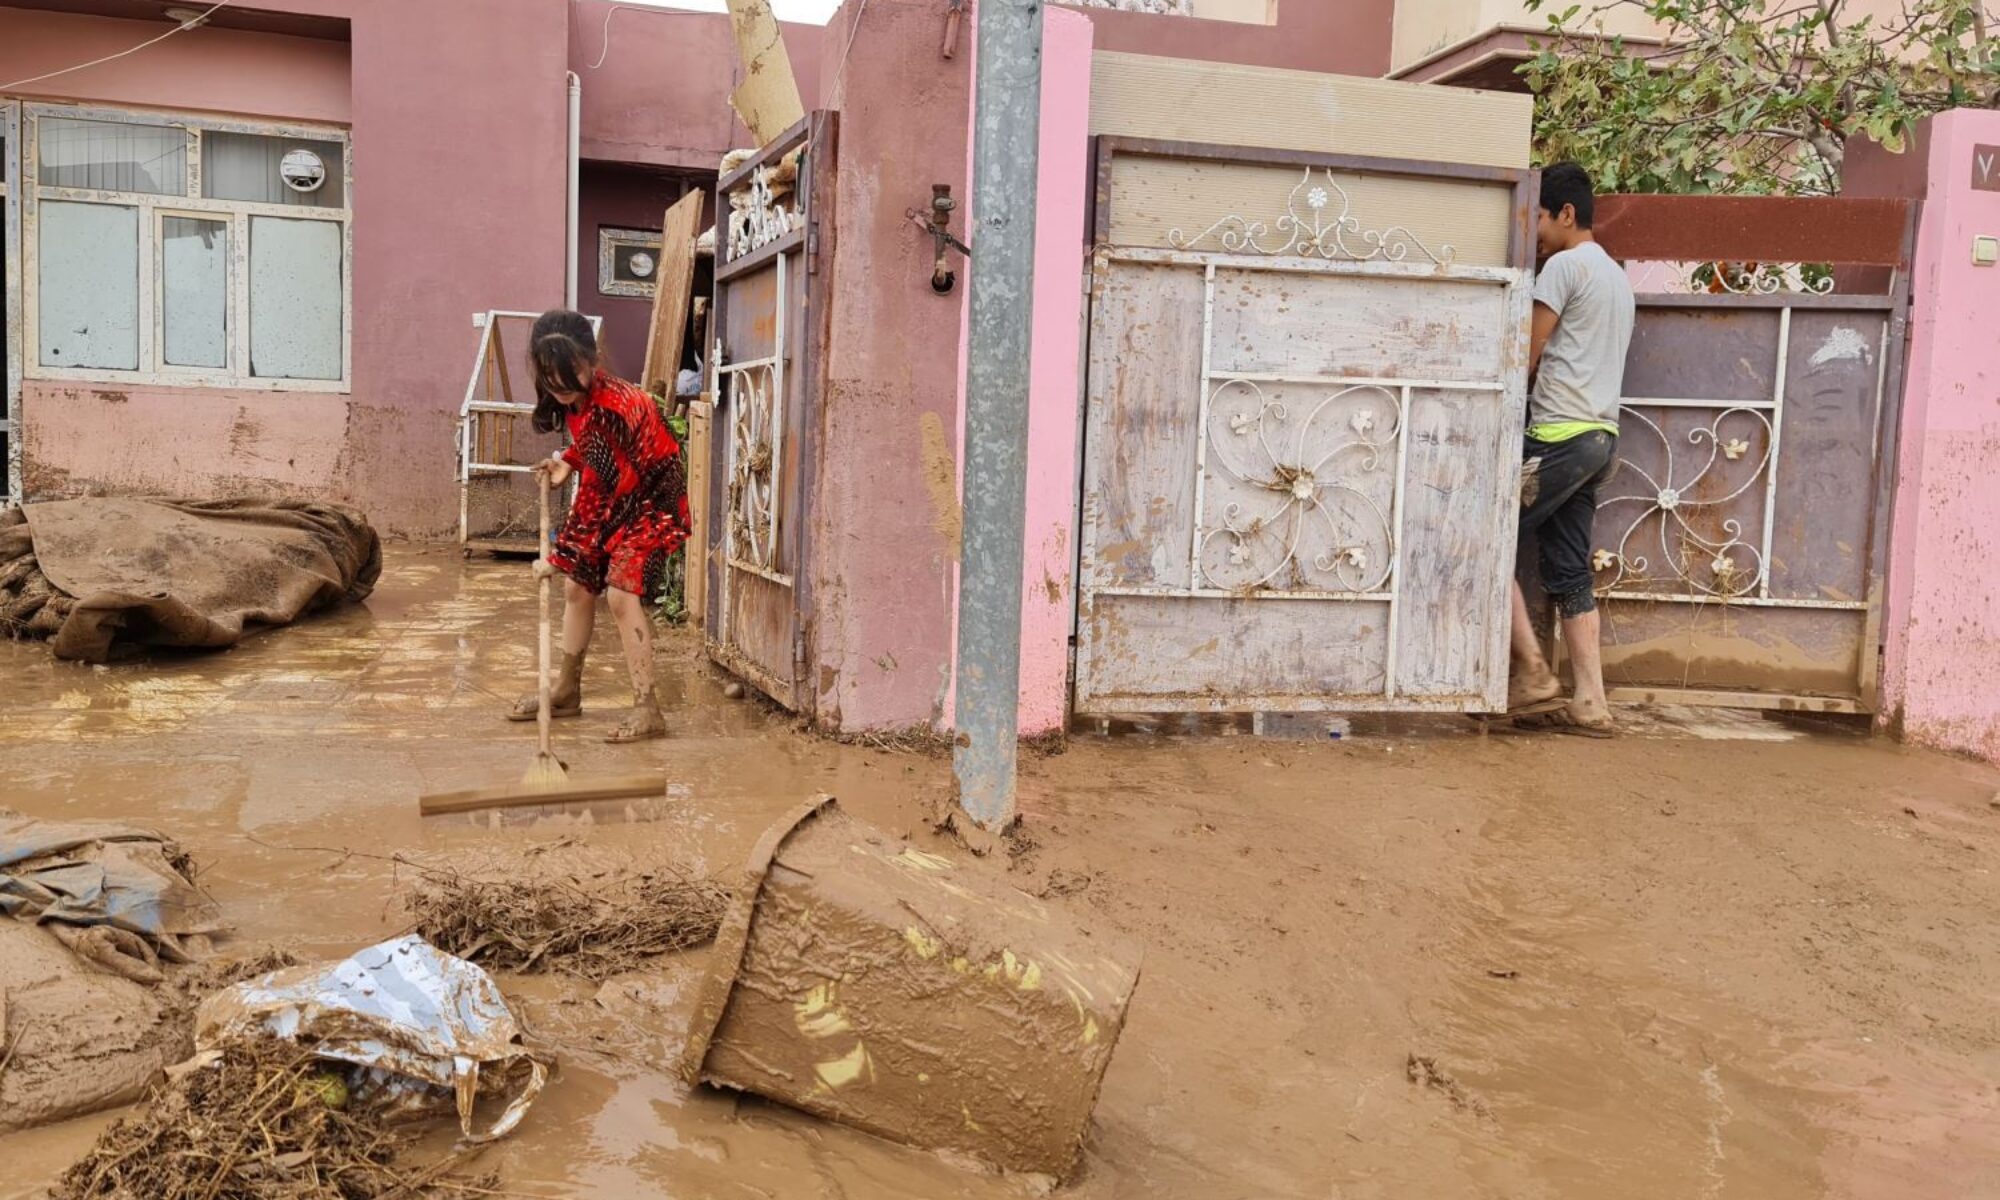 Kürdistan Bölgesi Hükümeti sel zararlarını karşılıyor: Evler yapılacak, her aileye 3 bin dolar ödenecek